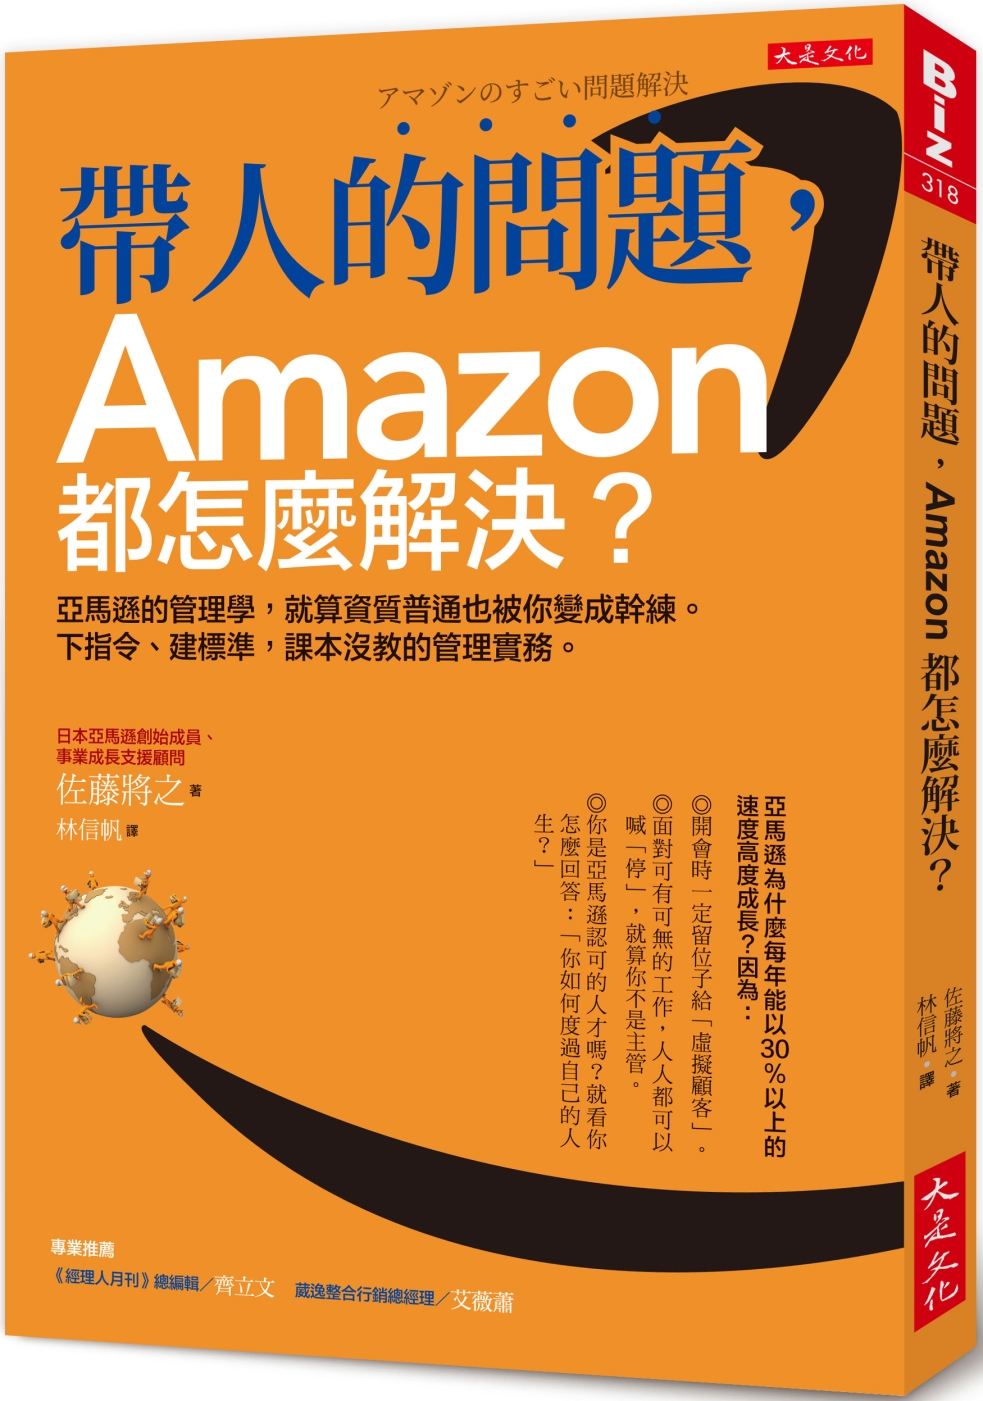 帶人的問題，Amazon都怎麼解決?：亞馬遜的管理學，就算資質普通也被你變成幹練。 下指令、建標準，課本沒教的管理實務。